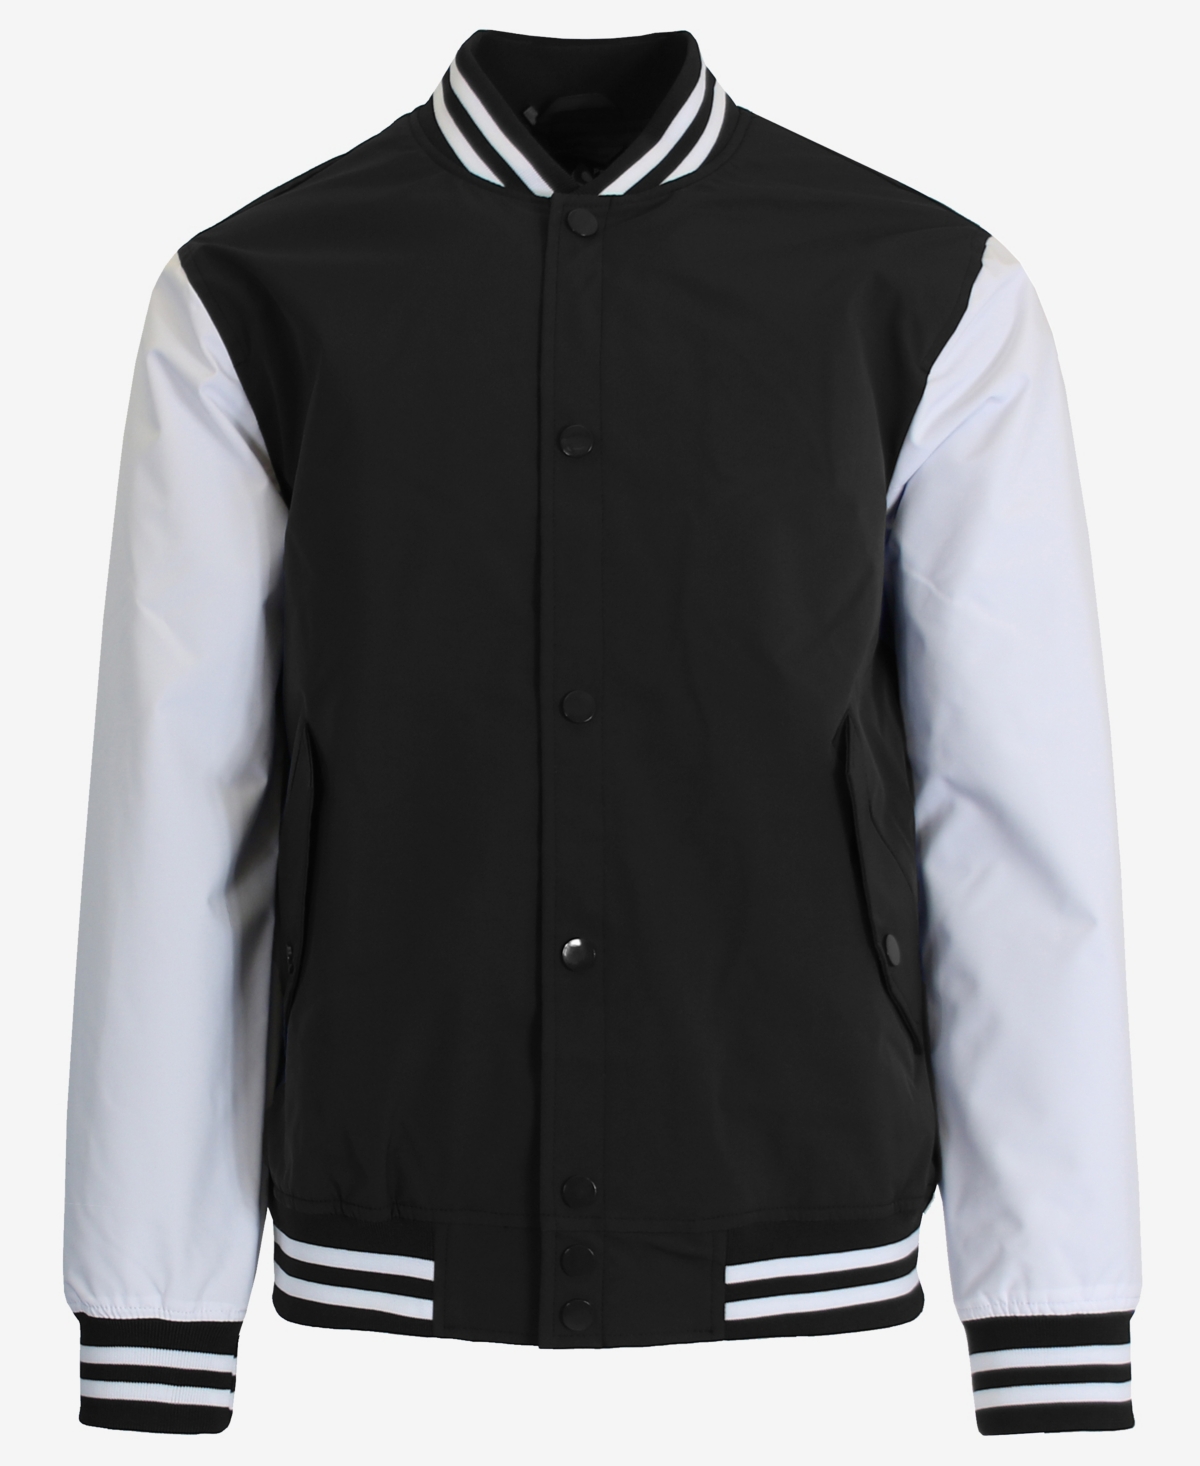 Spire By Galaxy Men's Lightweight Varsity Jacket In Black,white